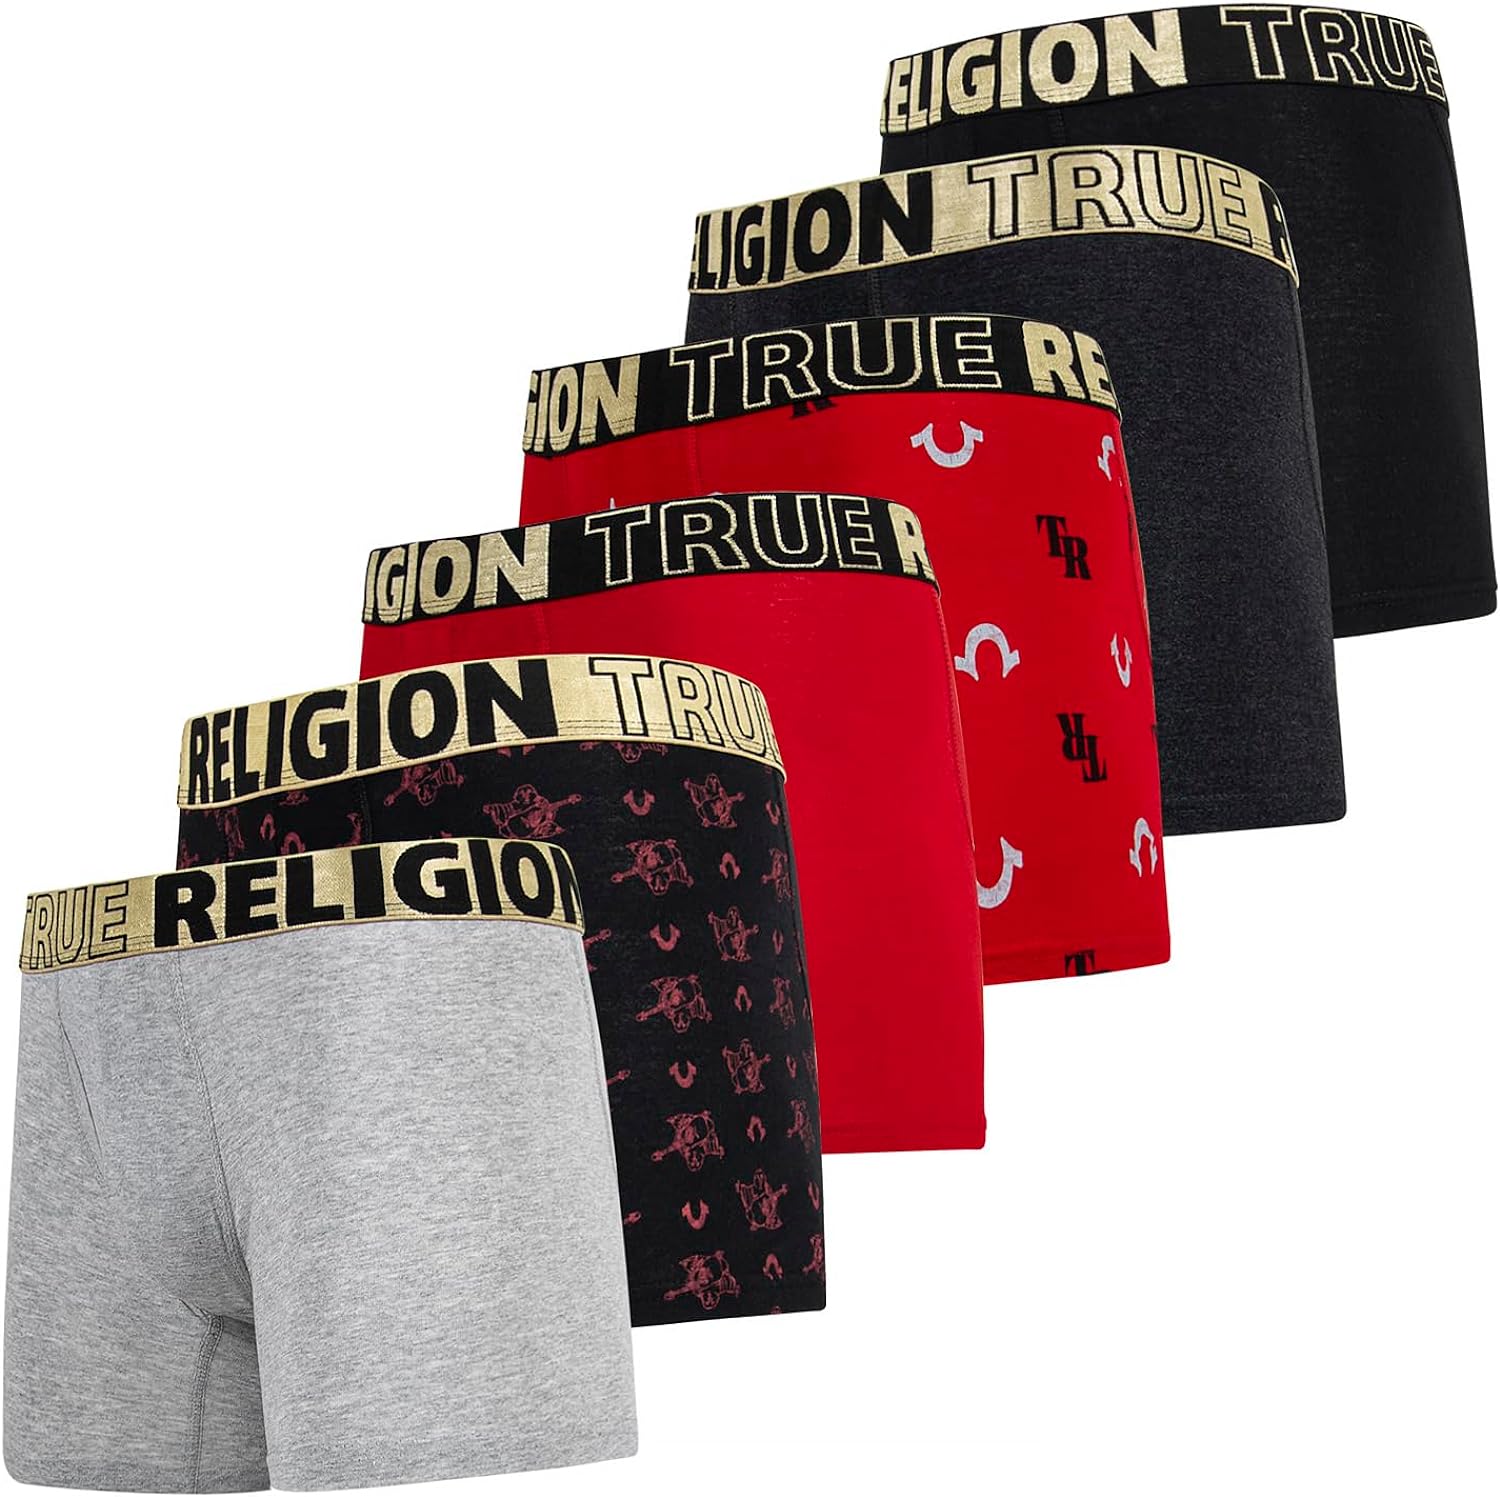 True Religion Mens Boxer Briefs Cotton Stretch Underwear for Men